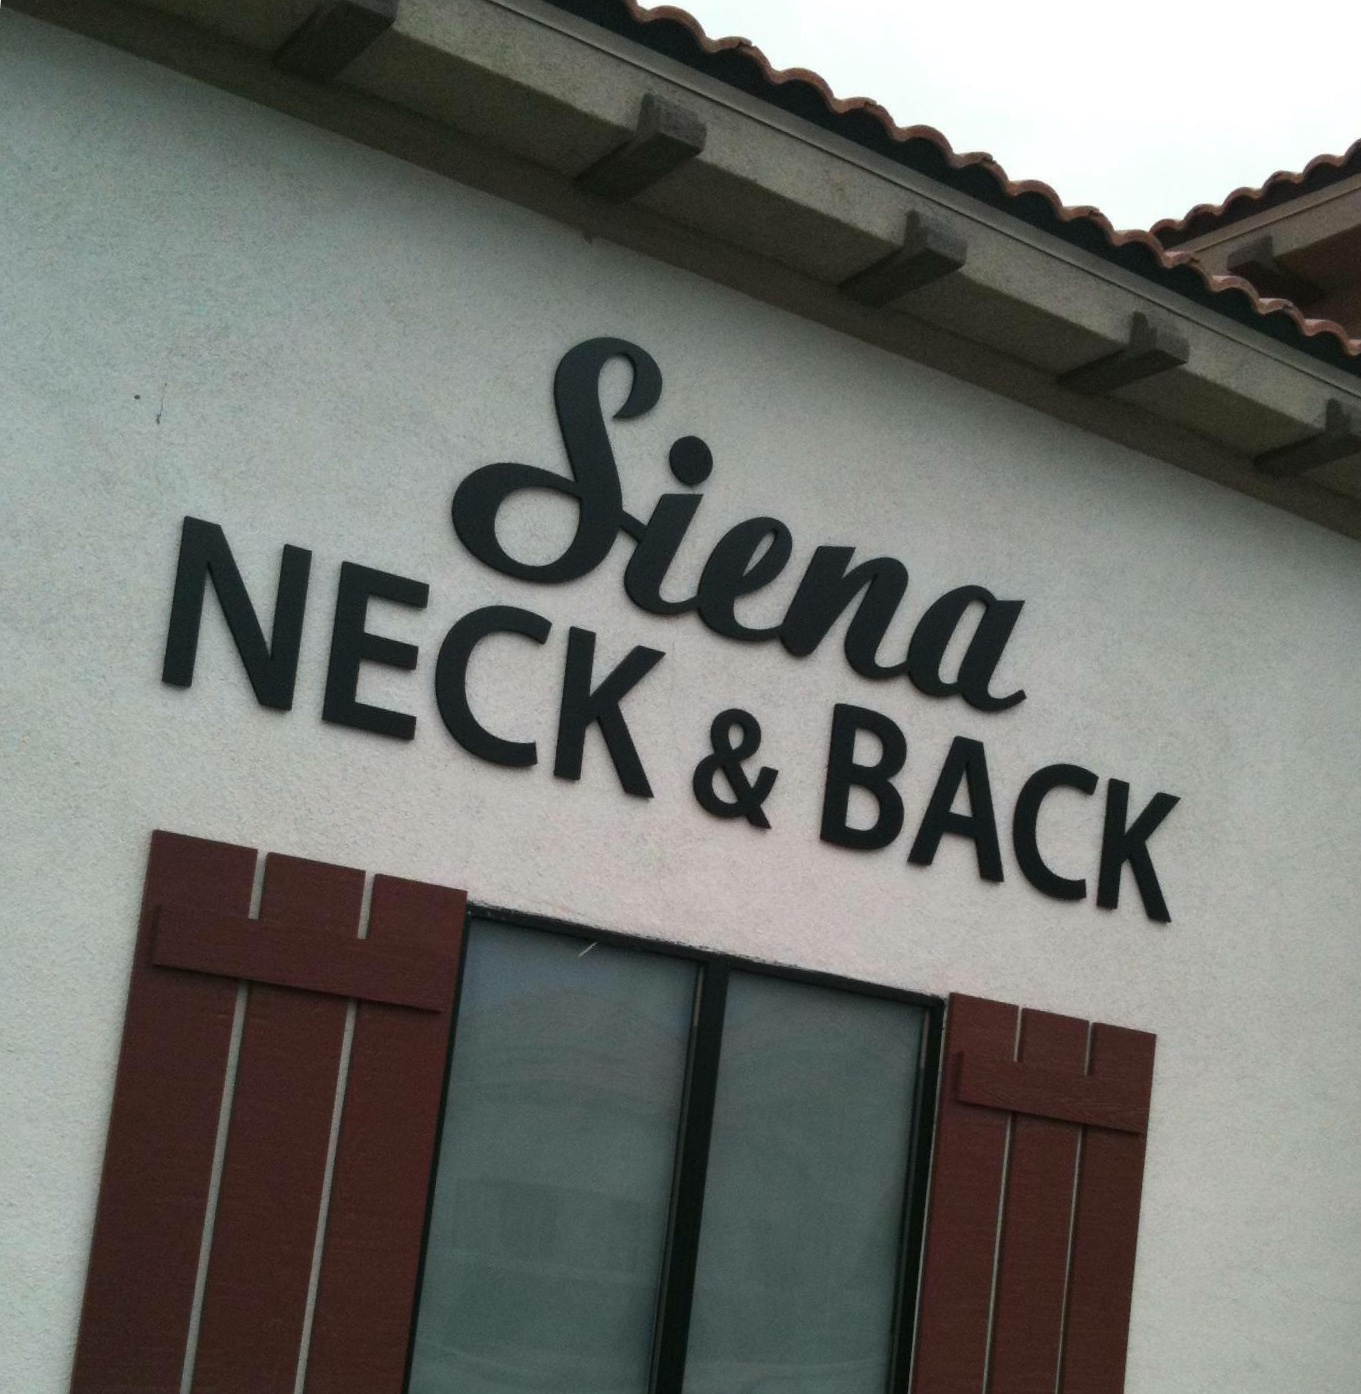 Siena Neck & Back